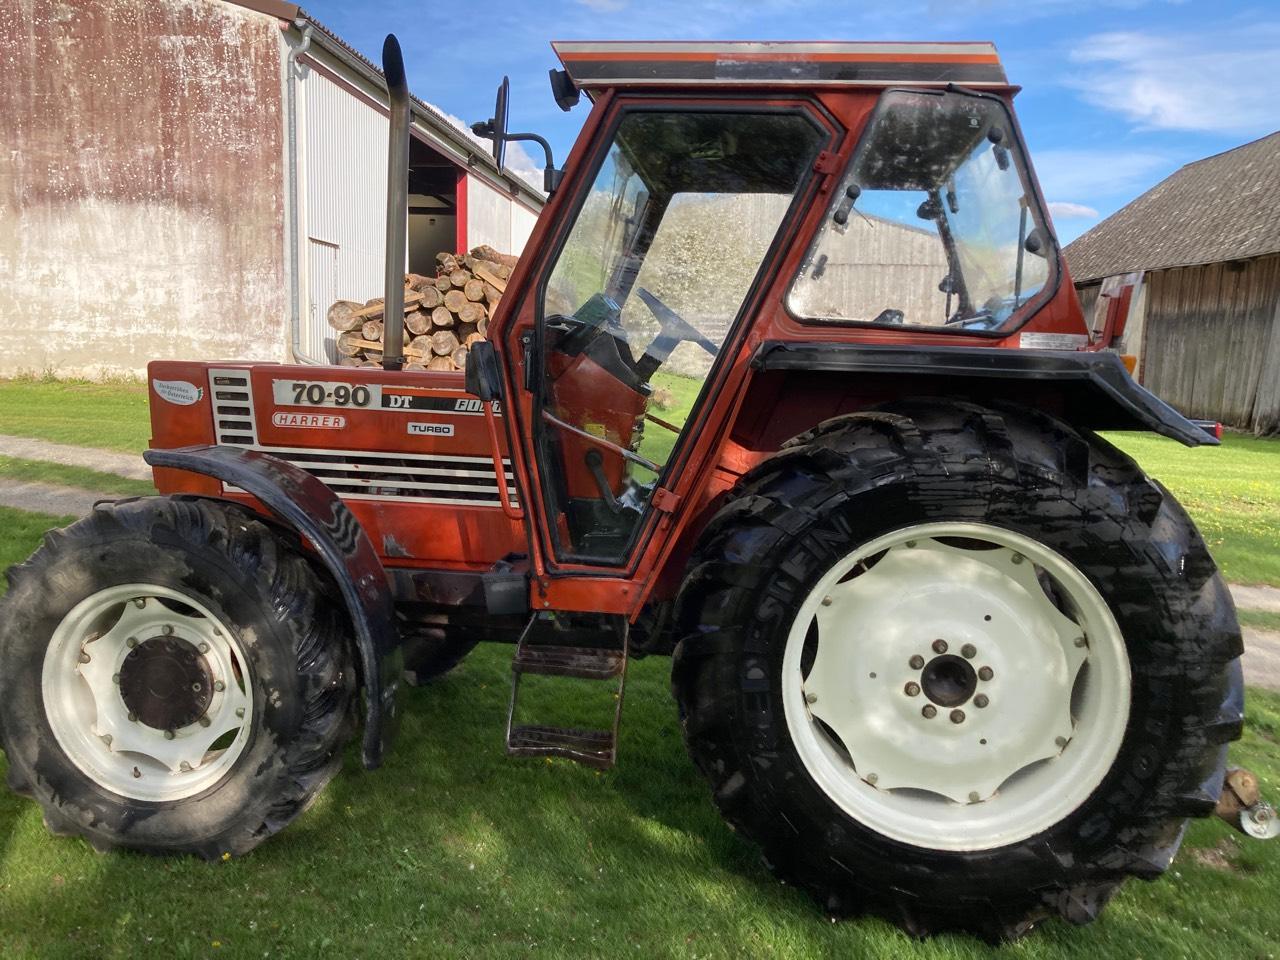 Fiat: Traktor Fiatagri 70-90 DT gebraucht kaufen - Landwirt.com